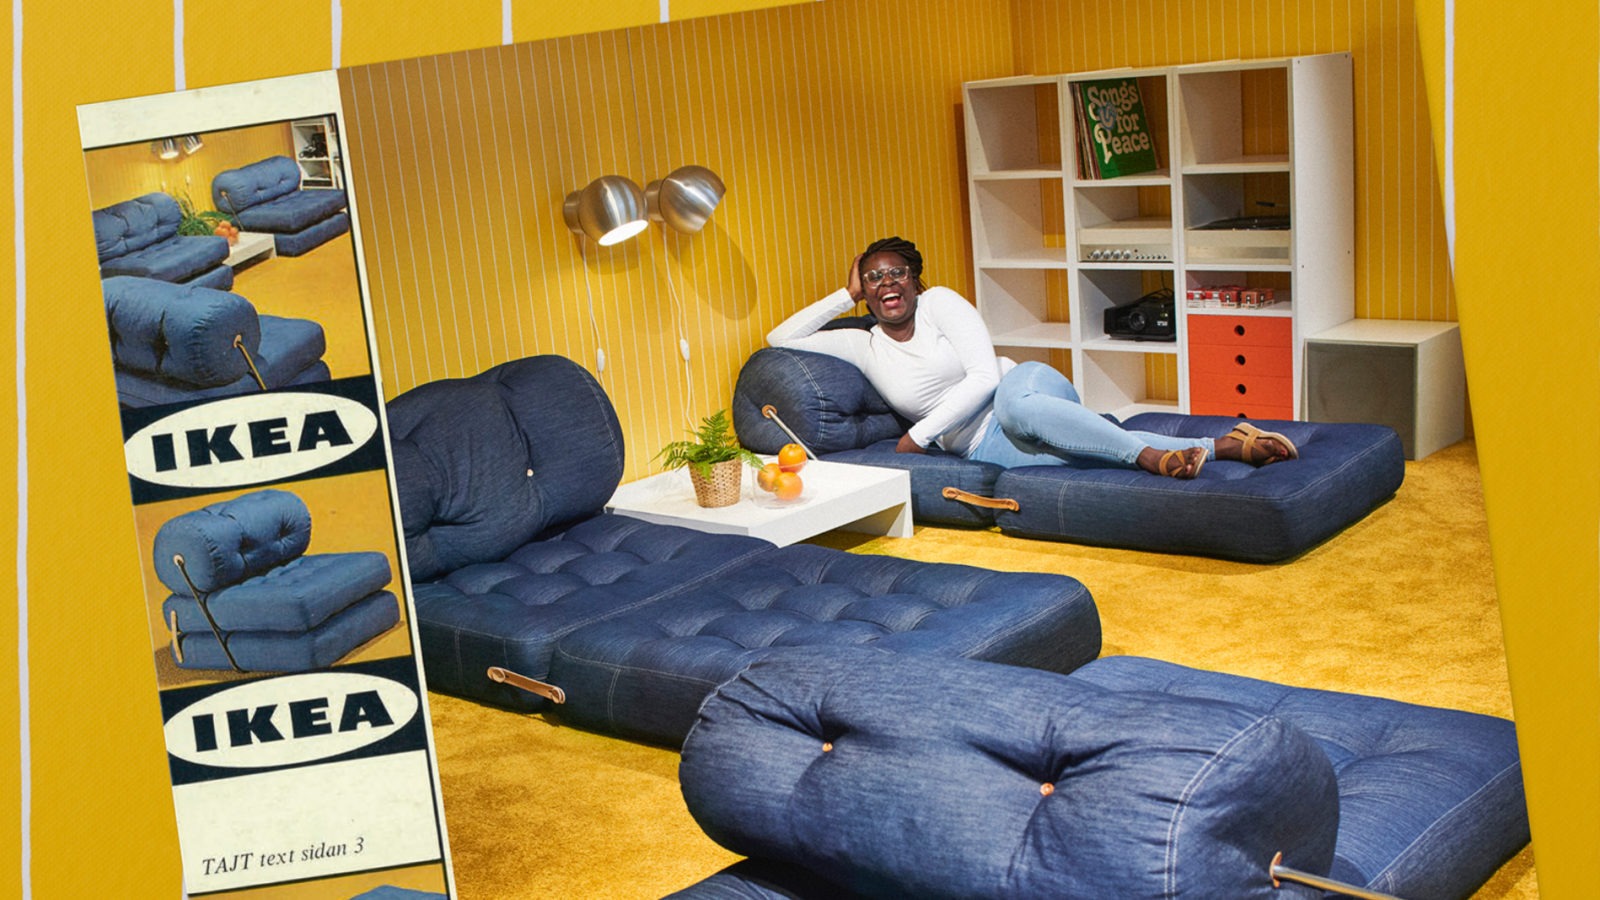 Ein personalisiertes Cover des IKEA Katalogs aus dem Jahr 1973 mit einer Frau, die auf einer Sofamatratze aus Jeansstoff in einem gelben Wohnzimmer liegt.